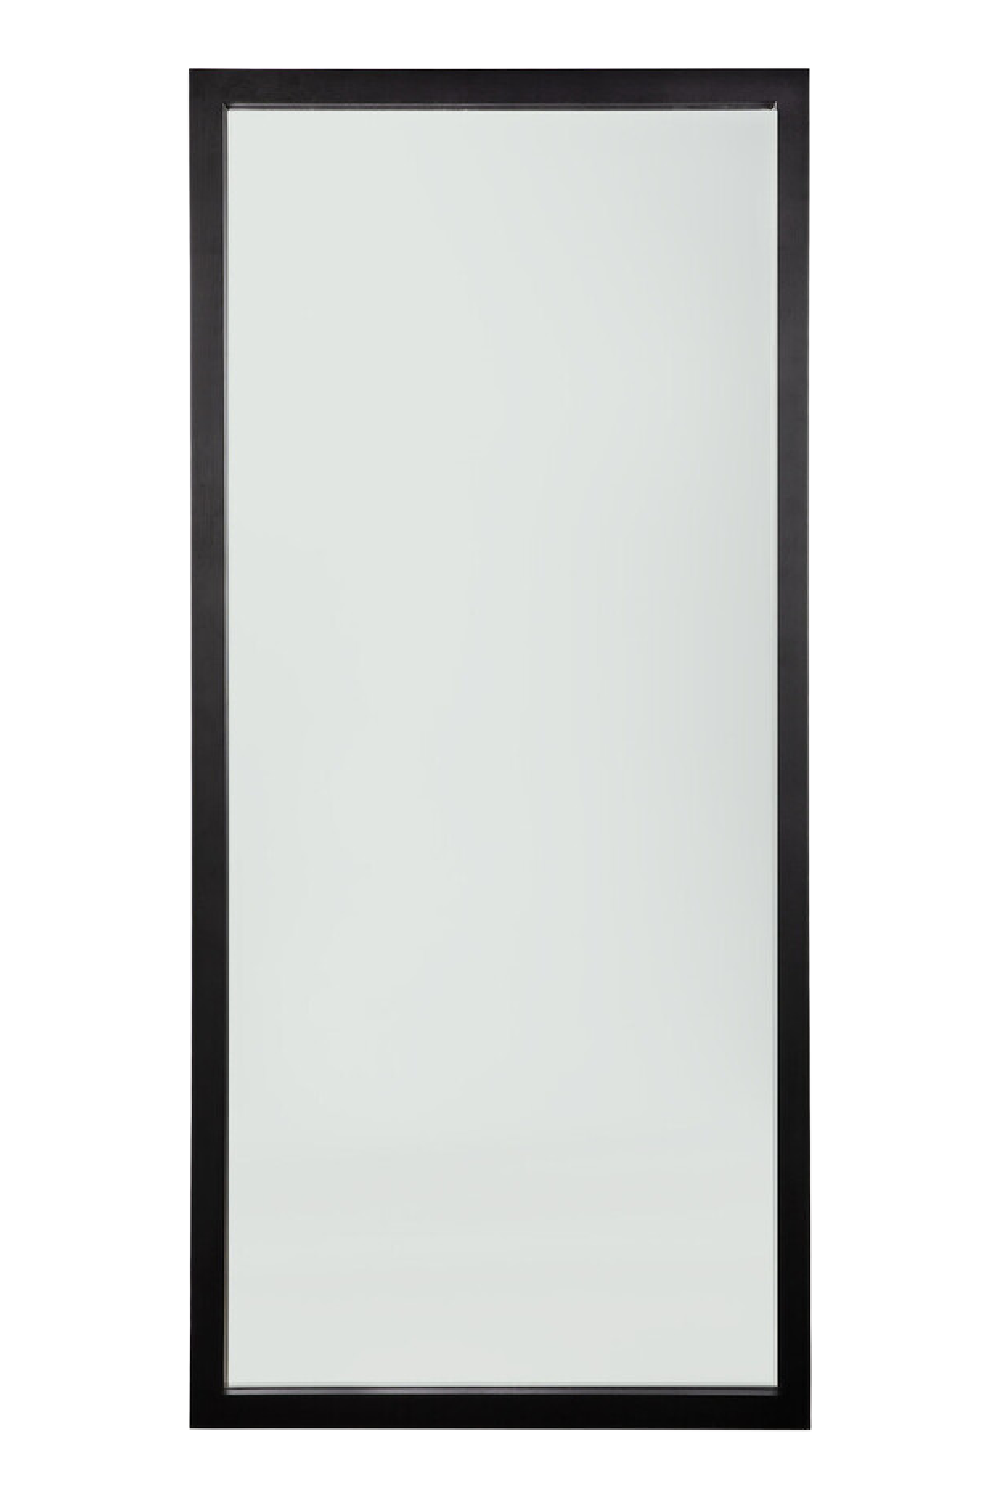 Oak Full-Length Floor Mirror | Ethnicraft Light Frame | OROA.com